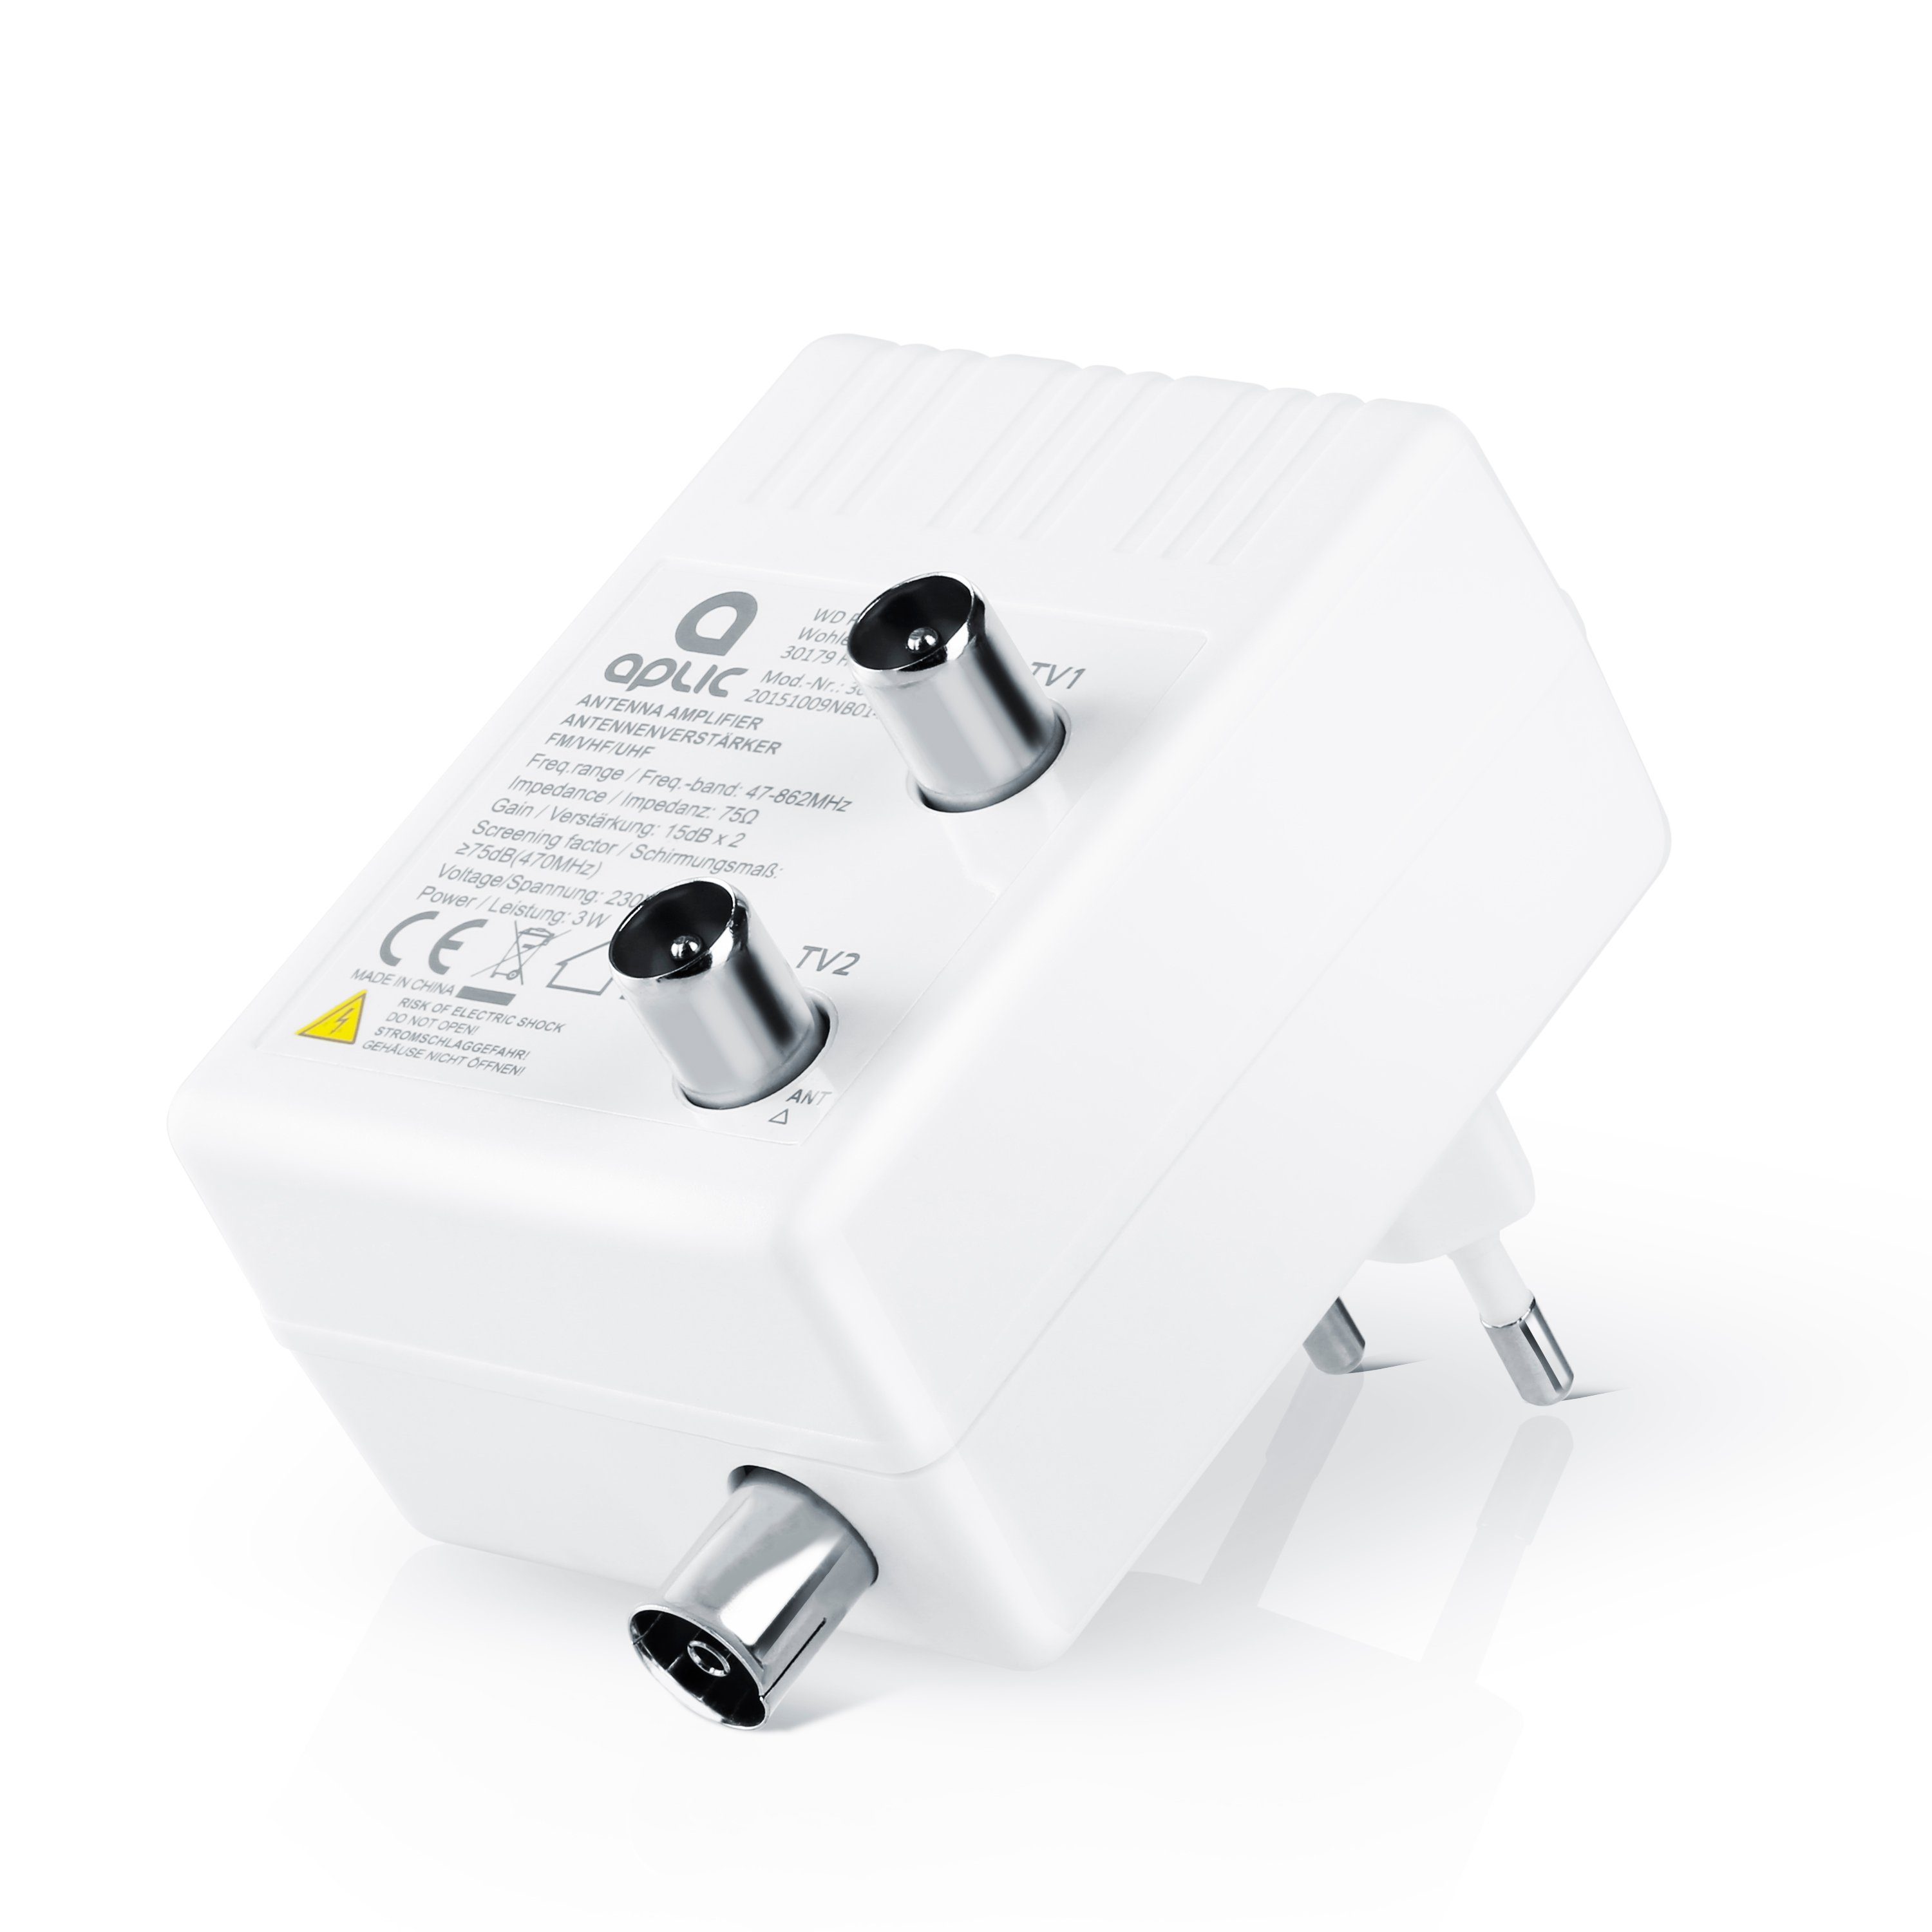 Aplic Verstärker (Antennen Verstärker für DVB-T2 / Kabel TV / Radio  Signalverstärkung von 2x 15 dB) online kaufen | OTTO